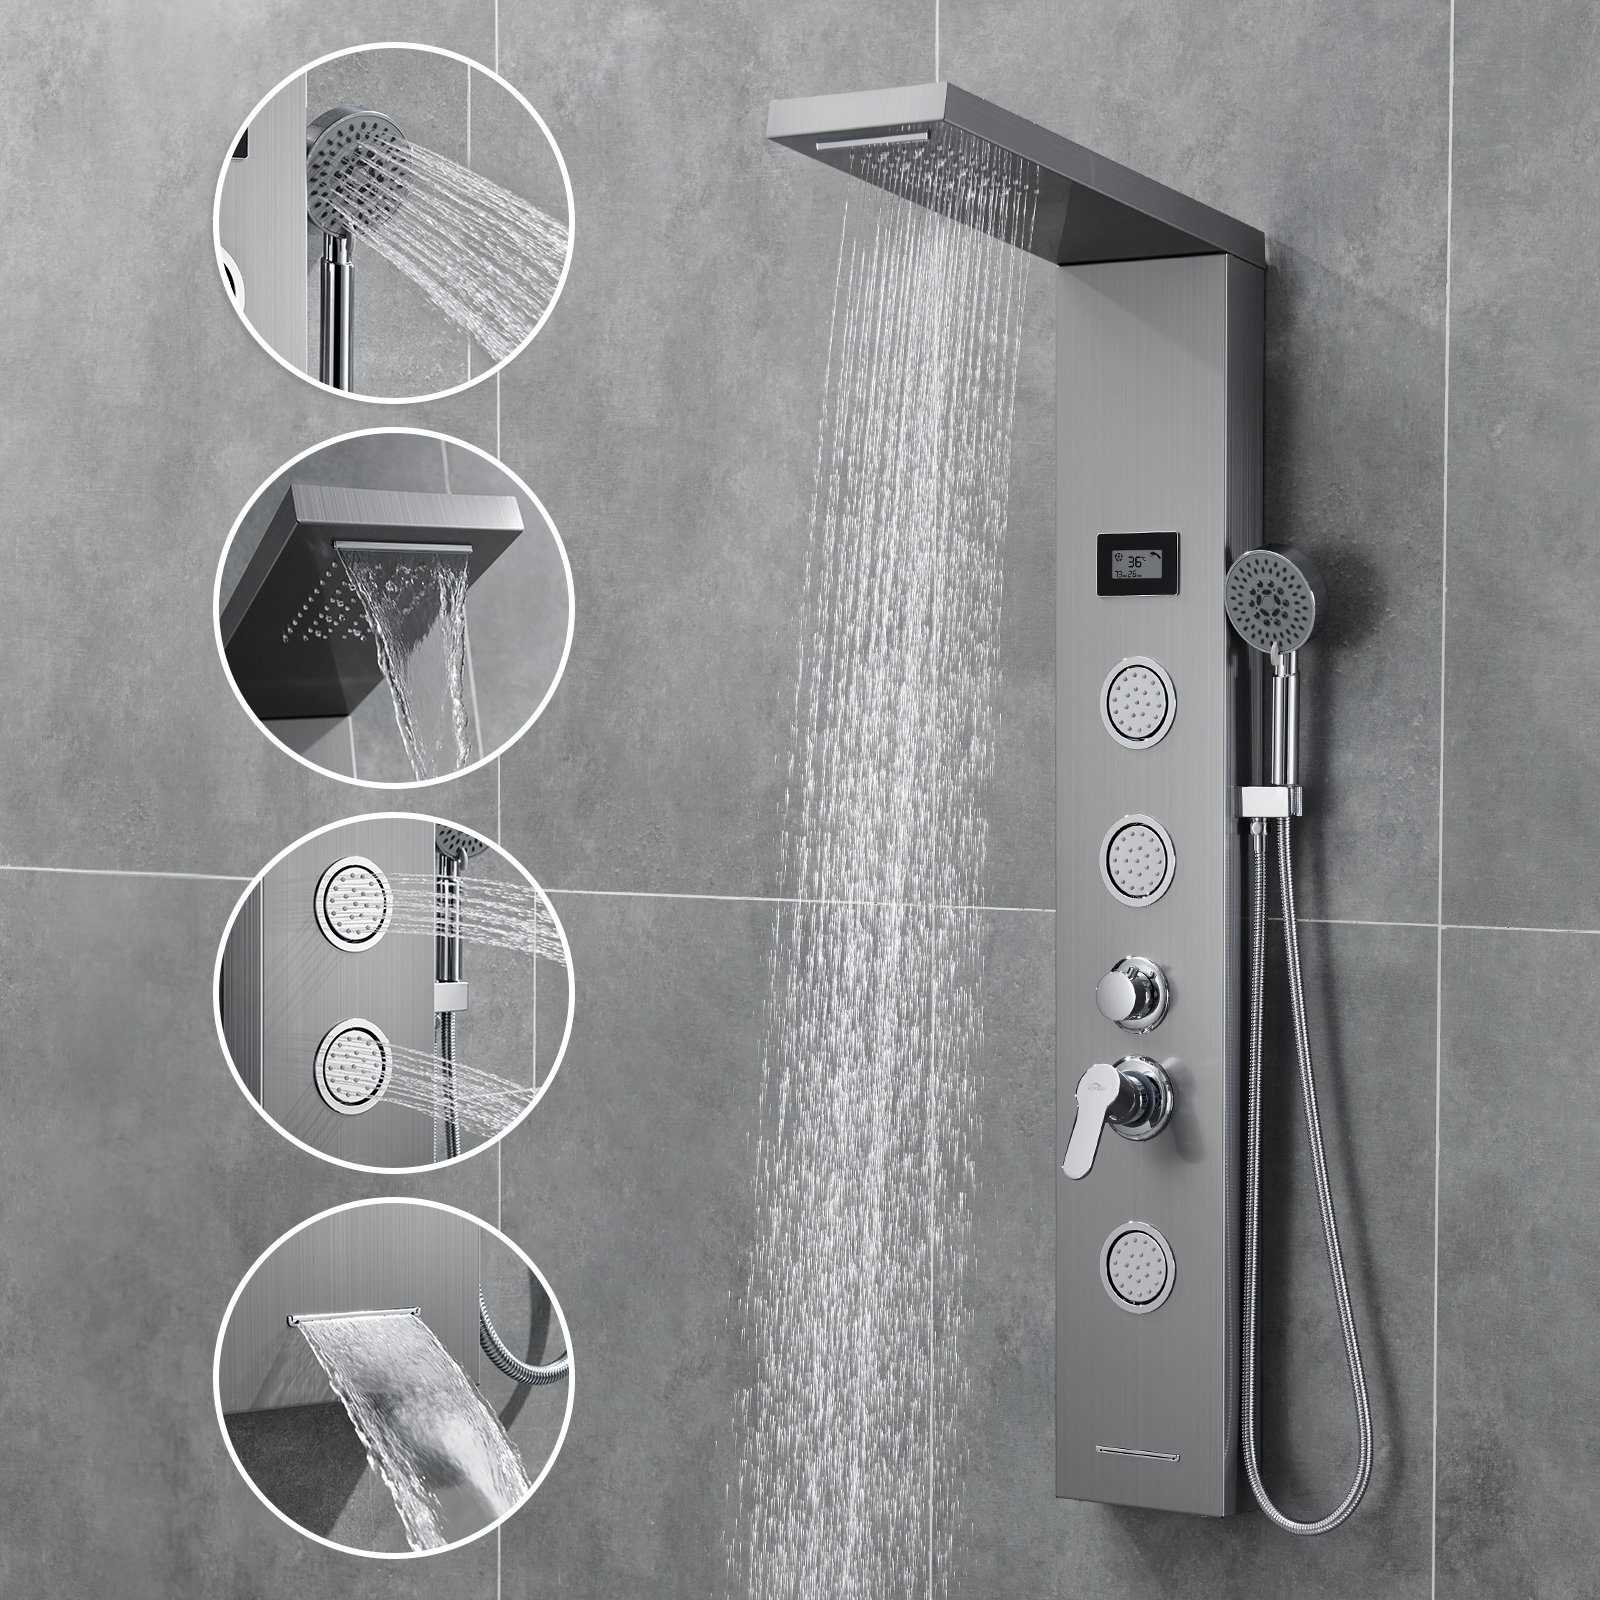 AuraLum pro Duschsystem 5-Funktion LED Duschpaneel Badezimmer mit Dusch Duschsäule Handbrause, Edelstahl Duschset, Wassertemperatur-Display